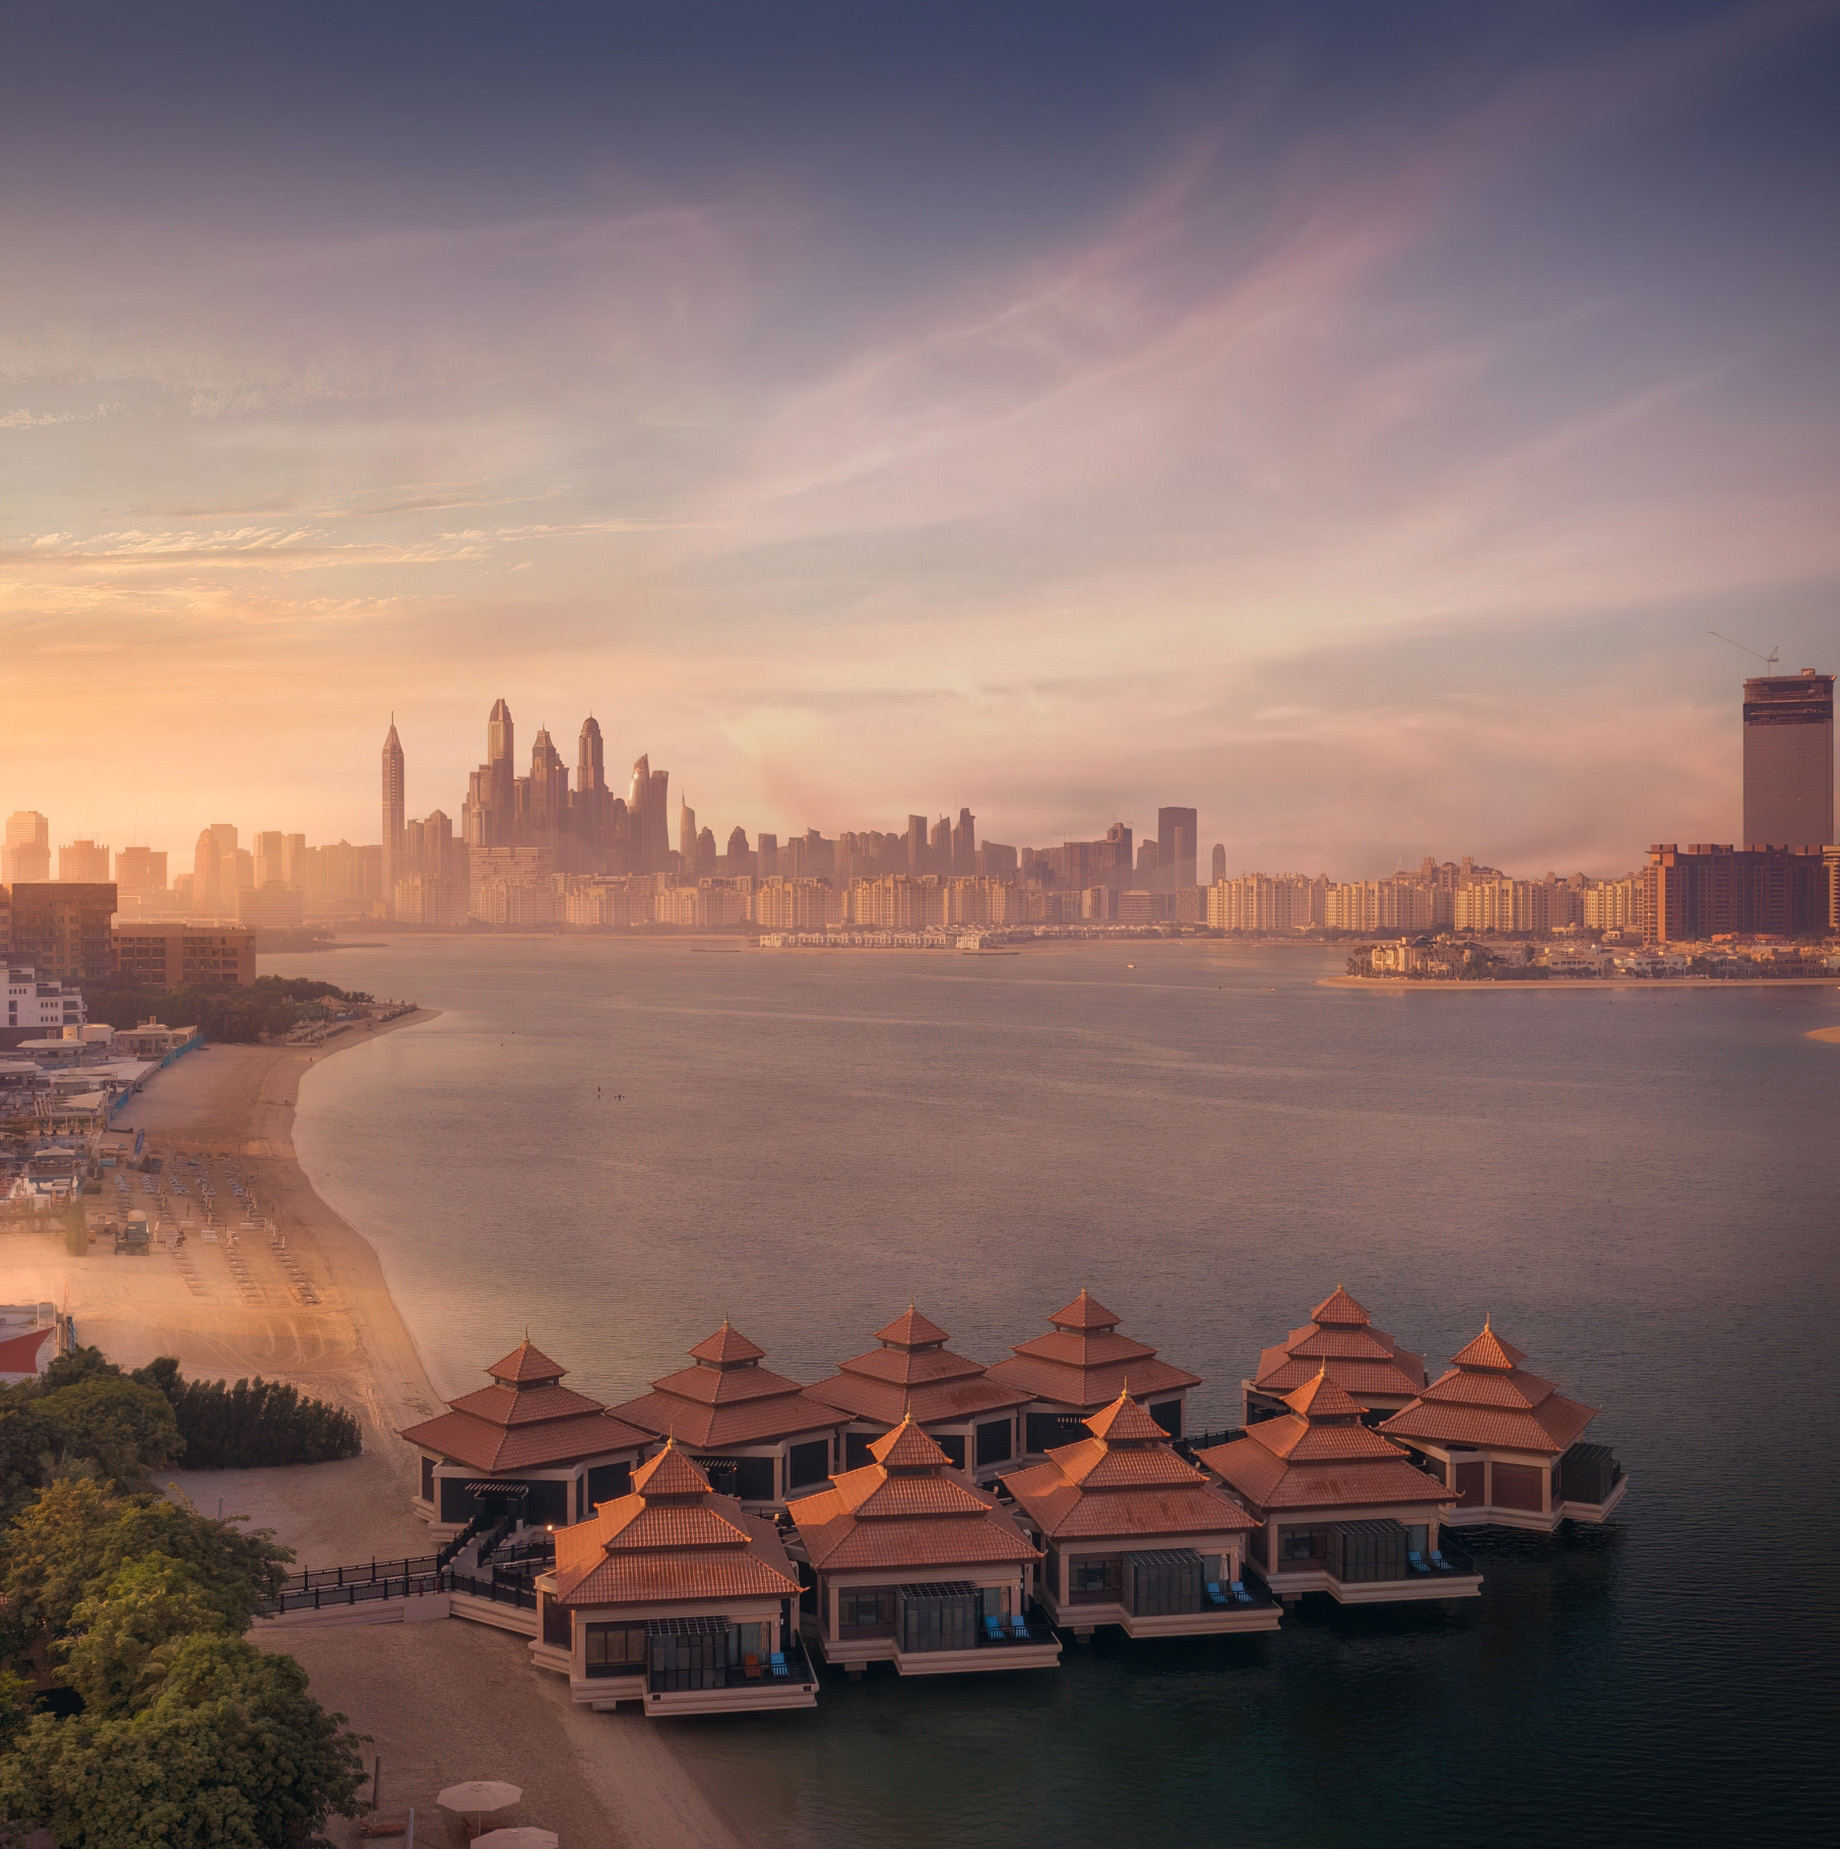 Anantara The Palm Dubai Resort – Dubai, UAE – Sunset Aerial View